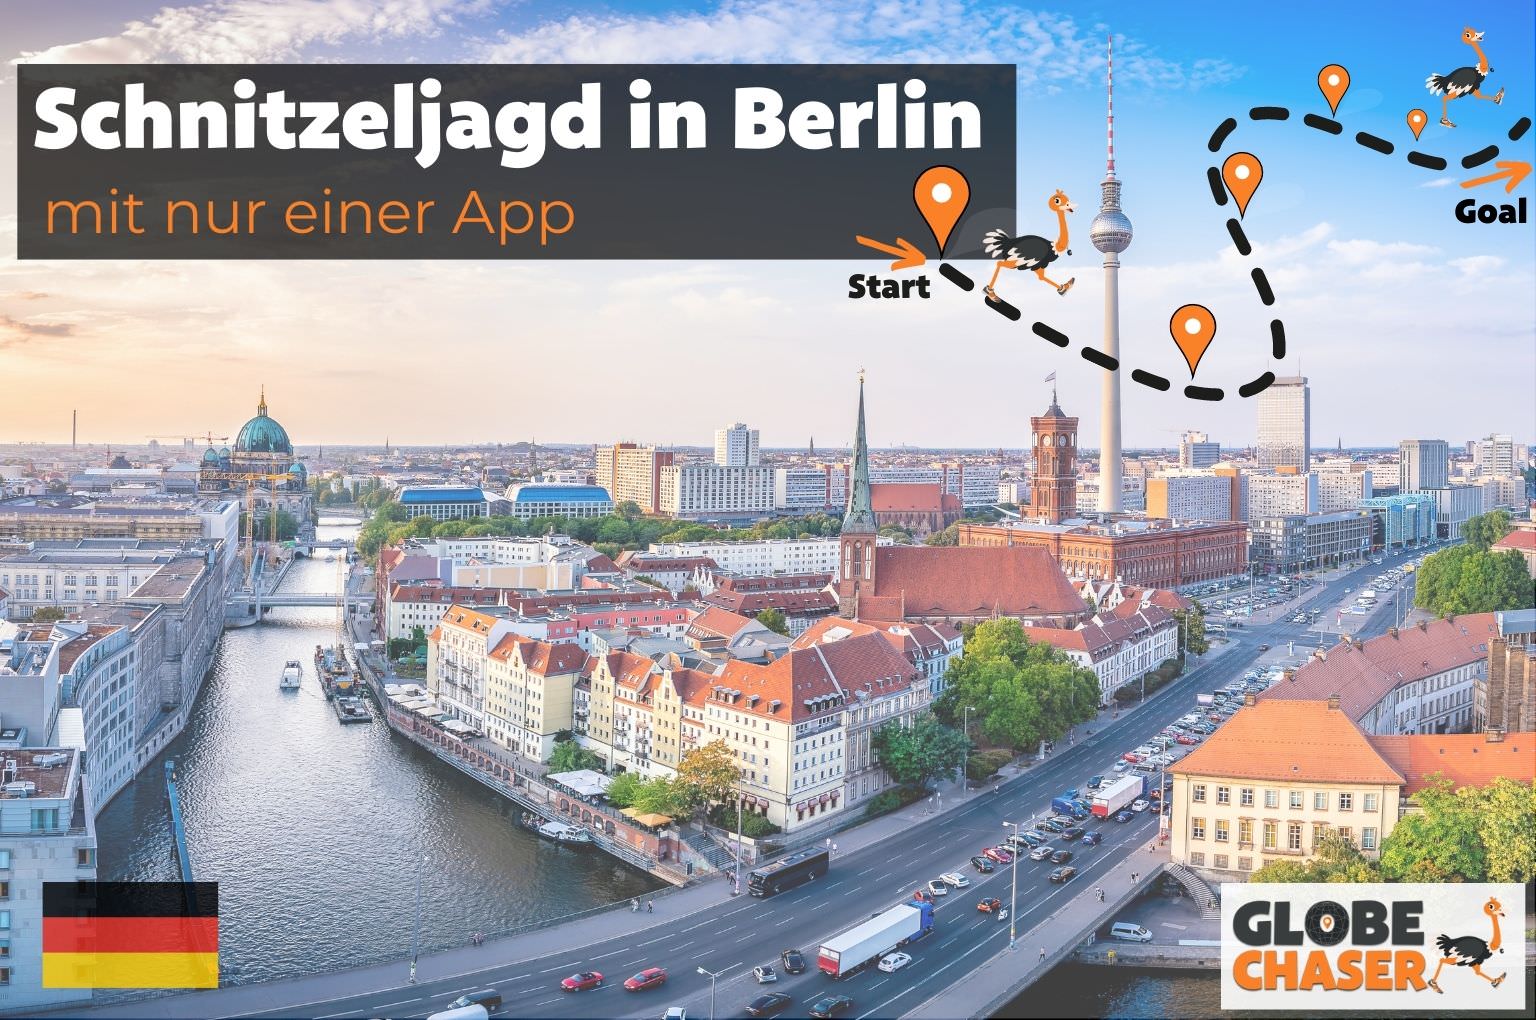 Schnitzeljagd in Berlin mit App - Globe Chaser Erlebnisse Deutschland